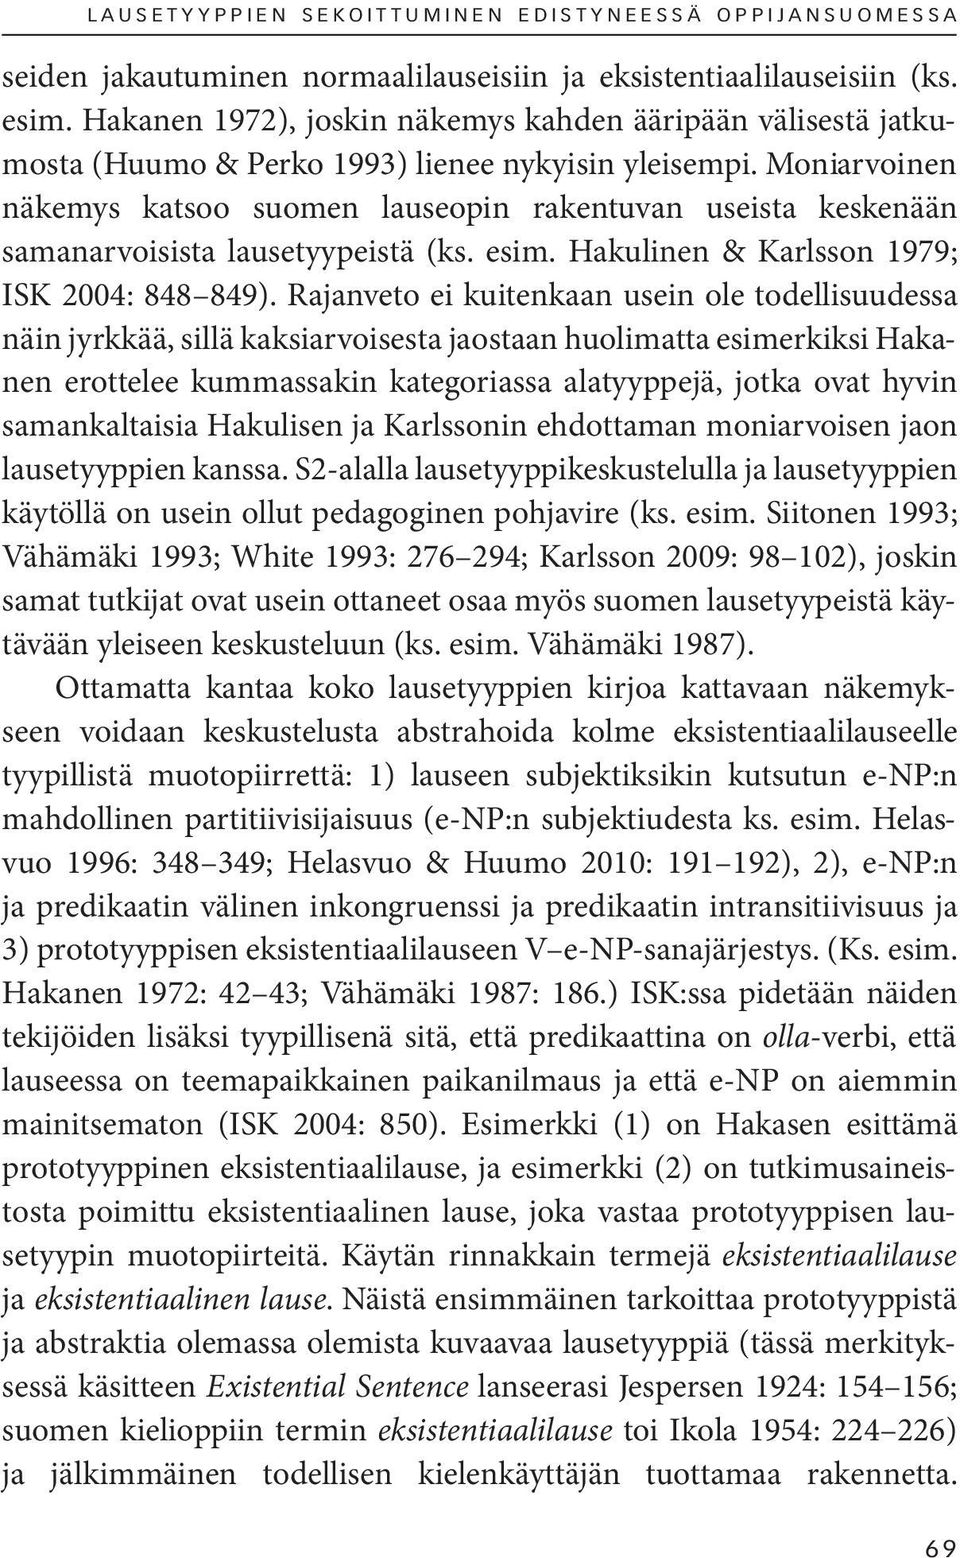 Moni arvoinen näkemys katsoo suomen lauseopin rakentuvan useista keskenään samanarvoisista lausetyypeistä (ks. esim. Hakulinen & Karlsson 1979; ISK 2004: 848 849).